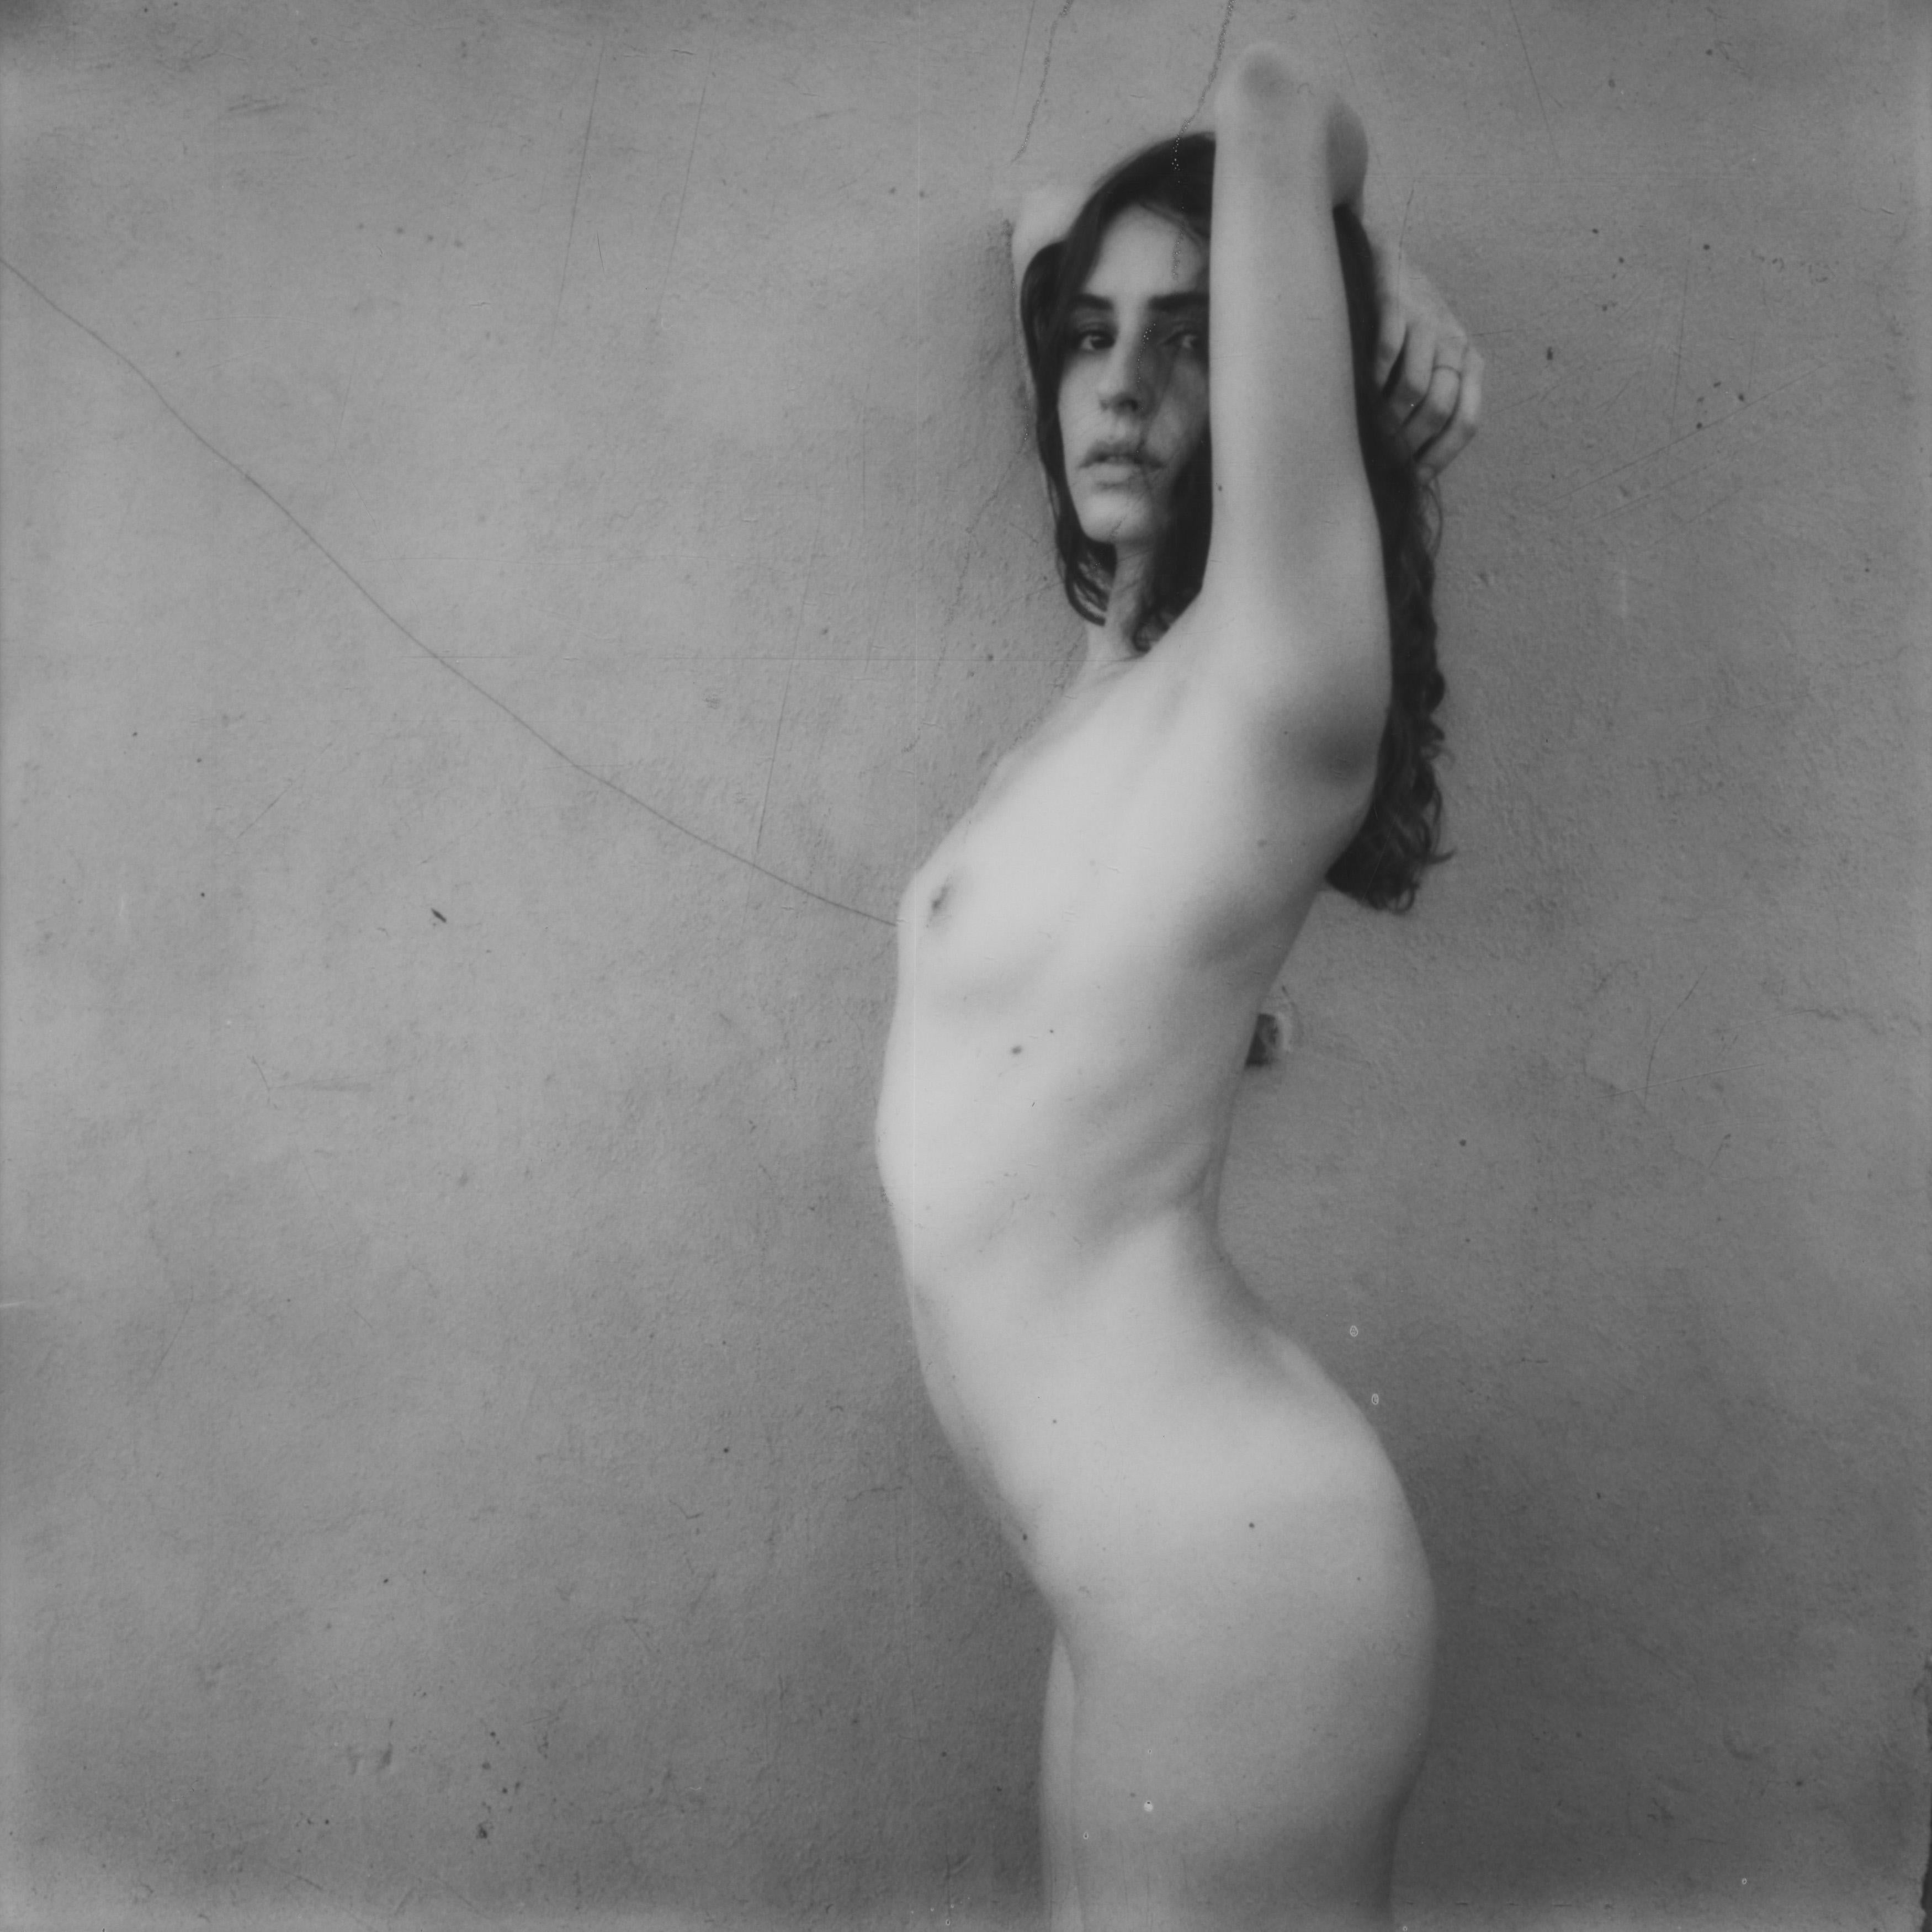 Turn - Contemporary, Women, Polaroid, 21st Century, Nude